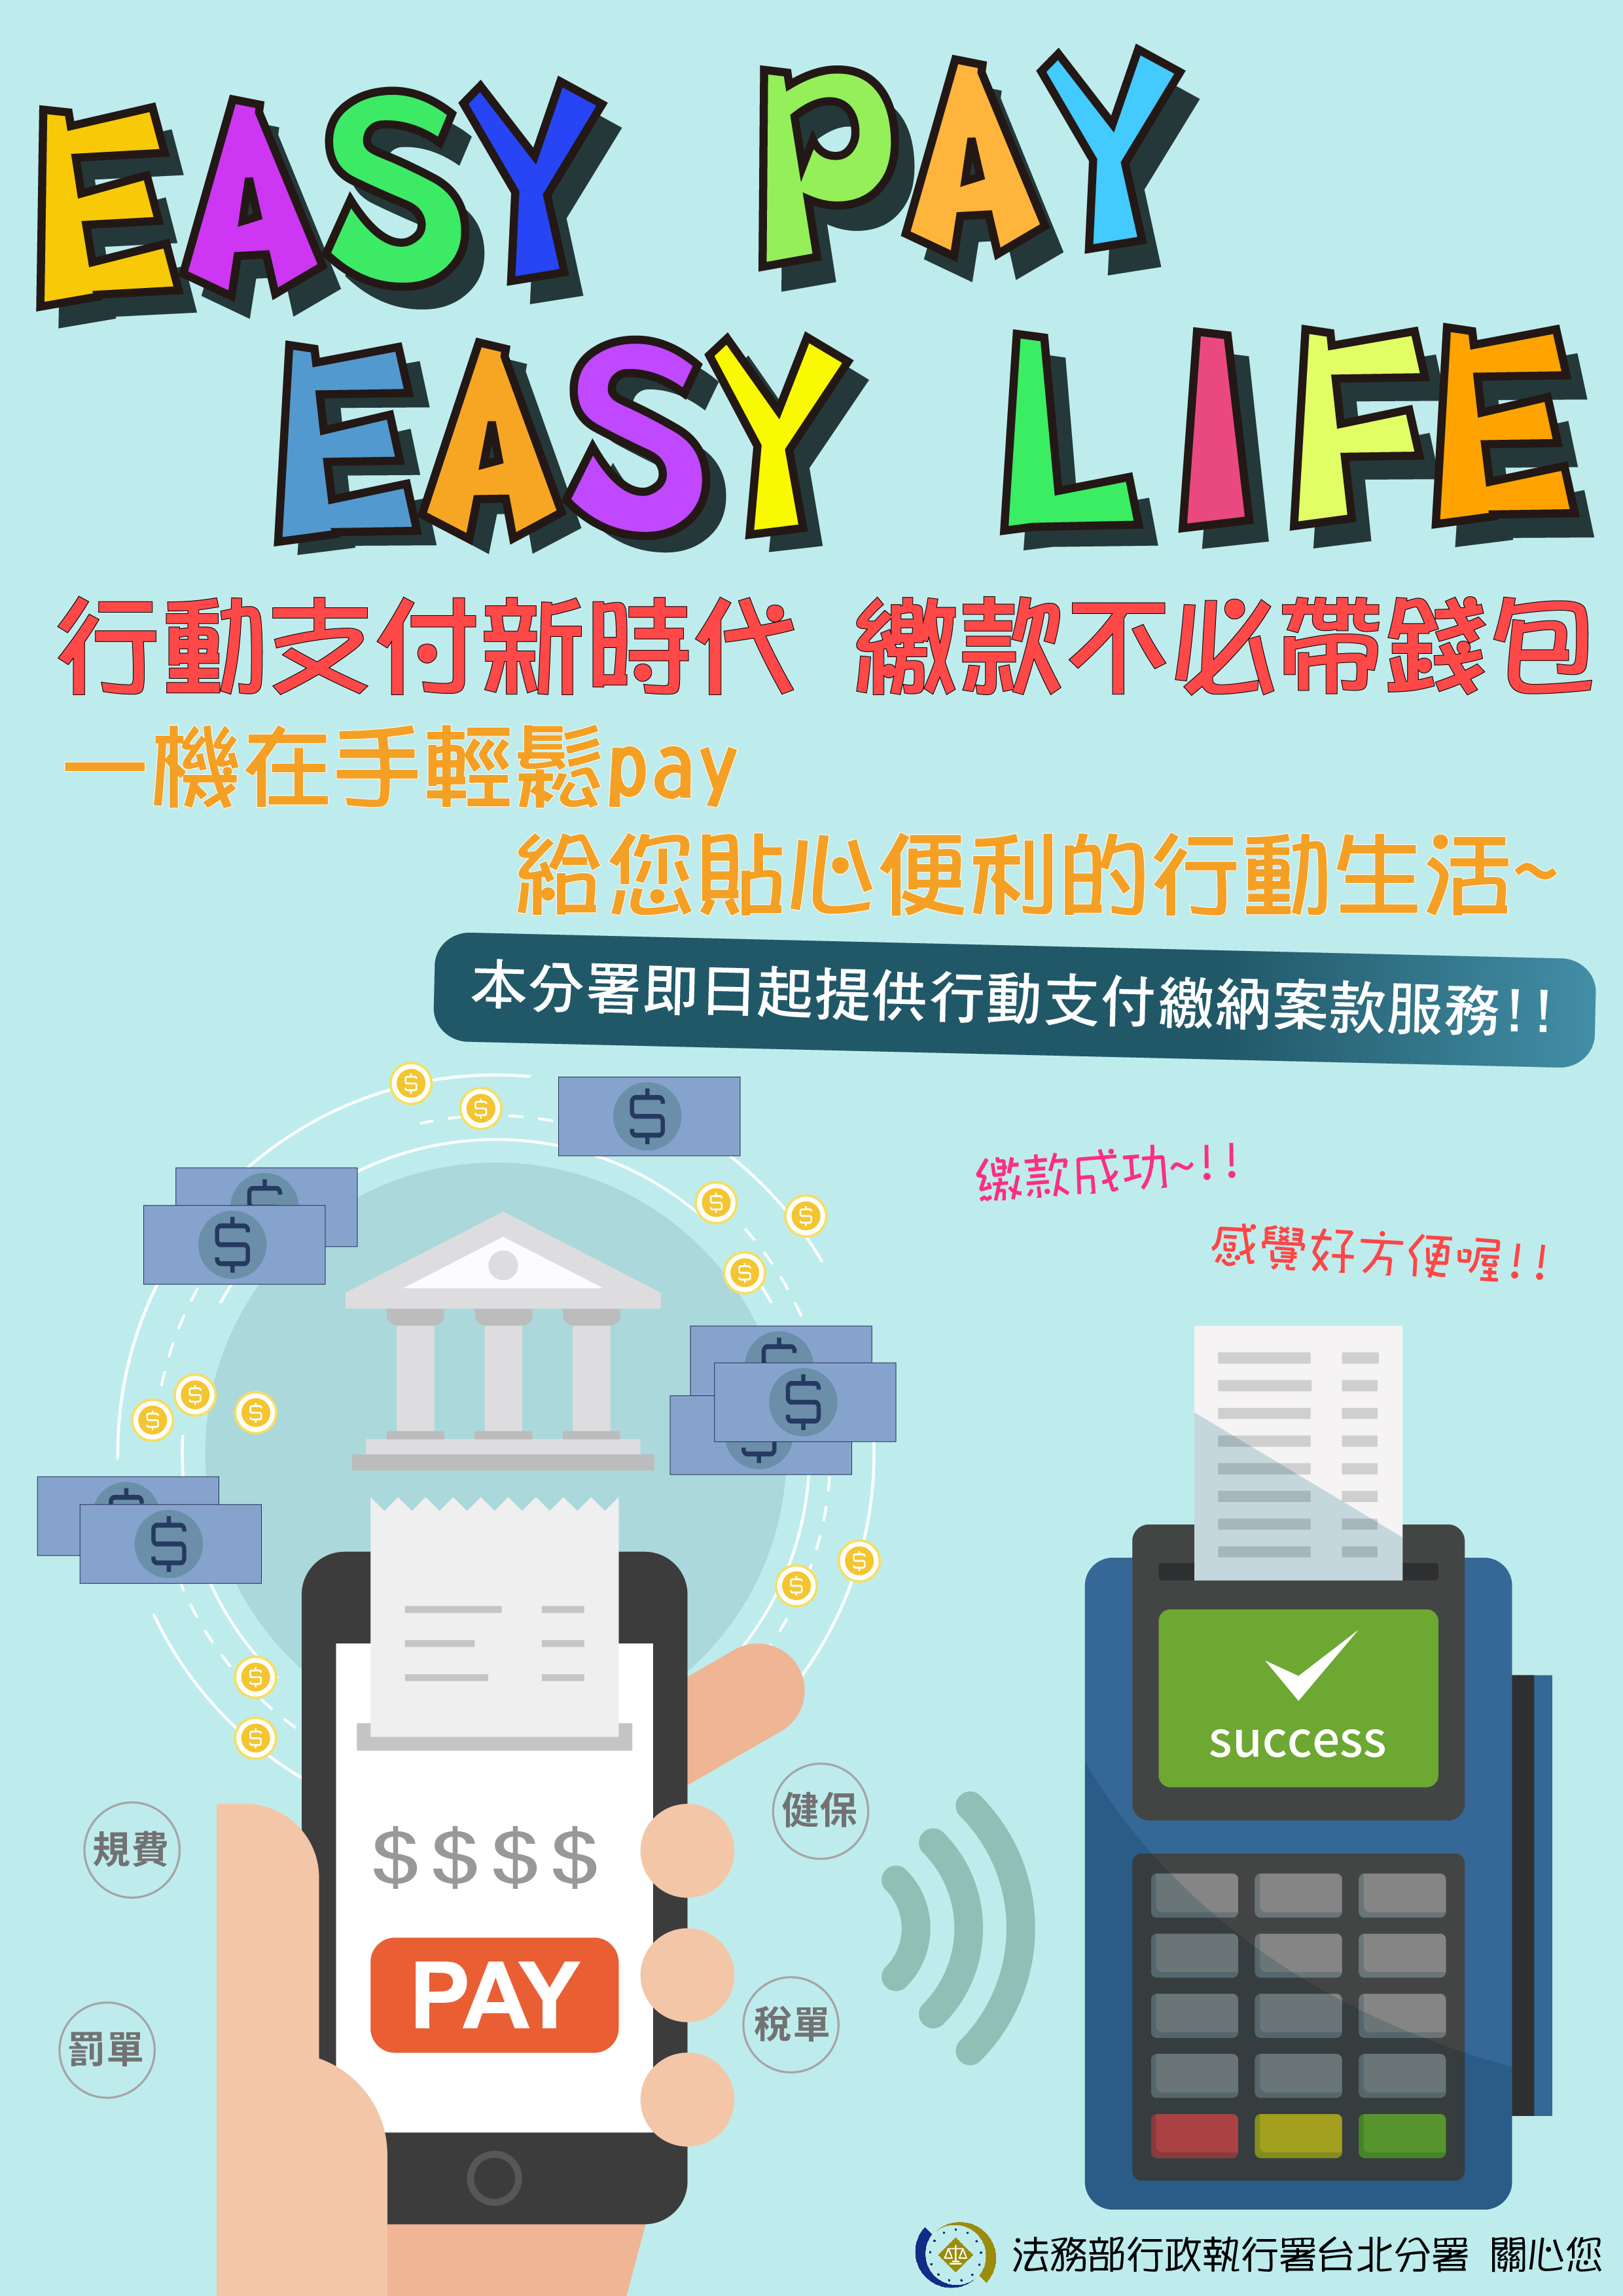 臺北分署即日起提供行動支付便民服務,一機在手easy pay,給您貼心便利的行動生活